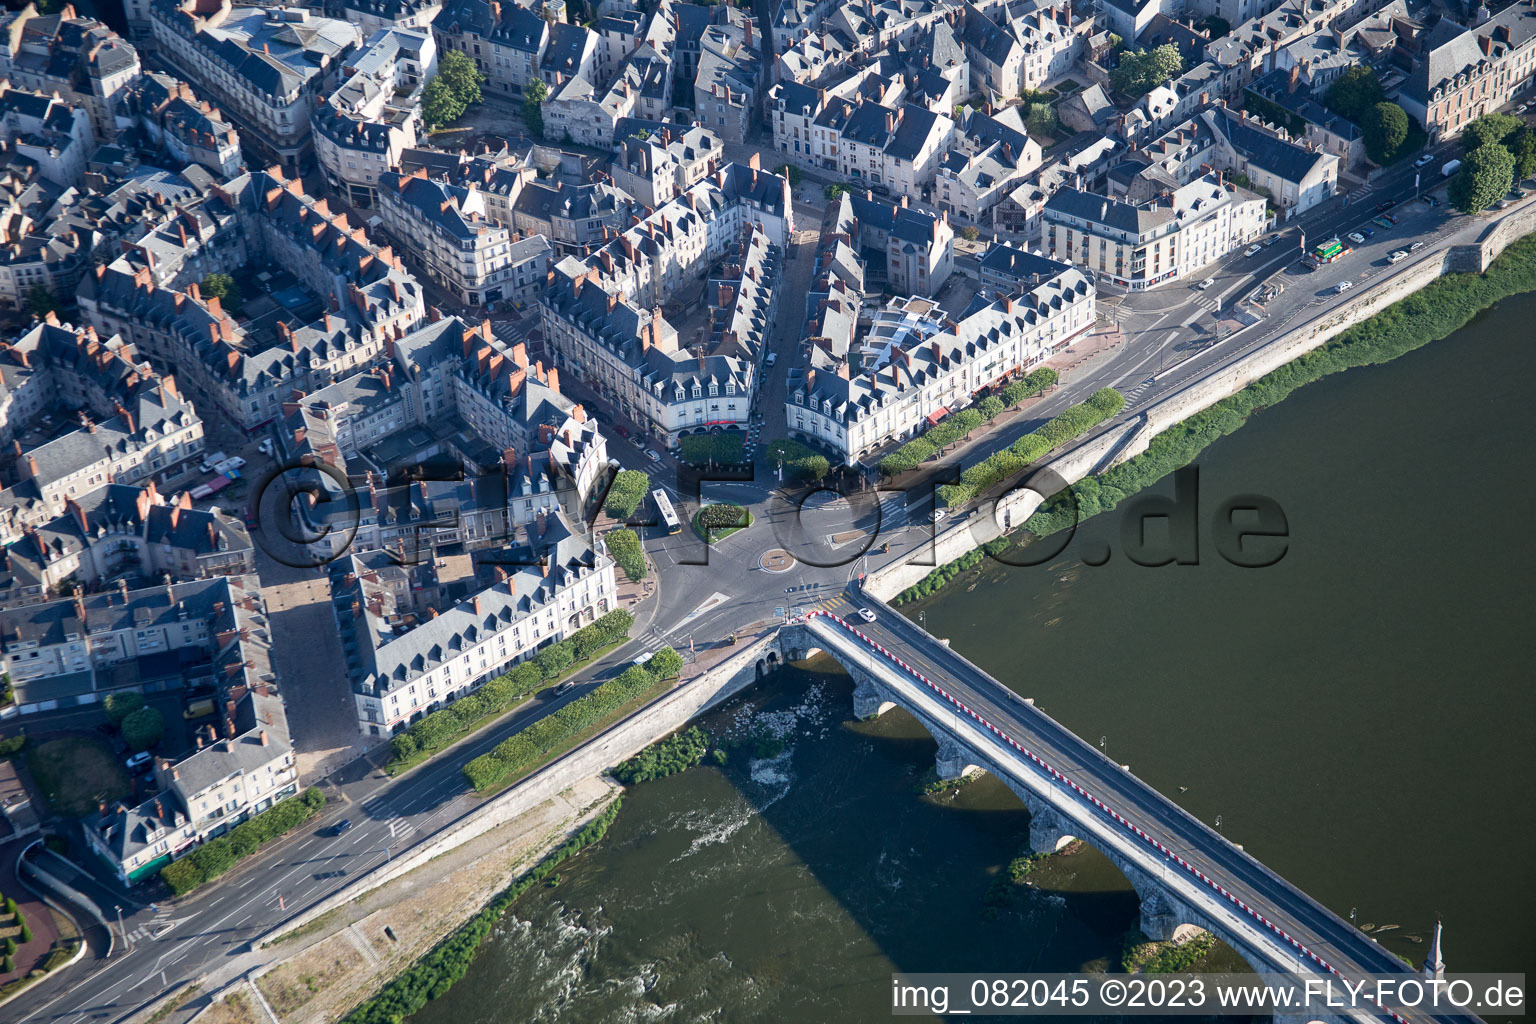 Blois dans le département Loir et Cher, France d'un drone